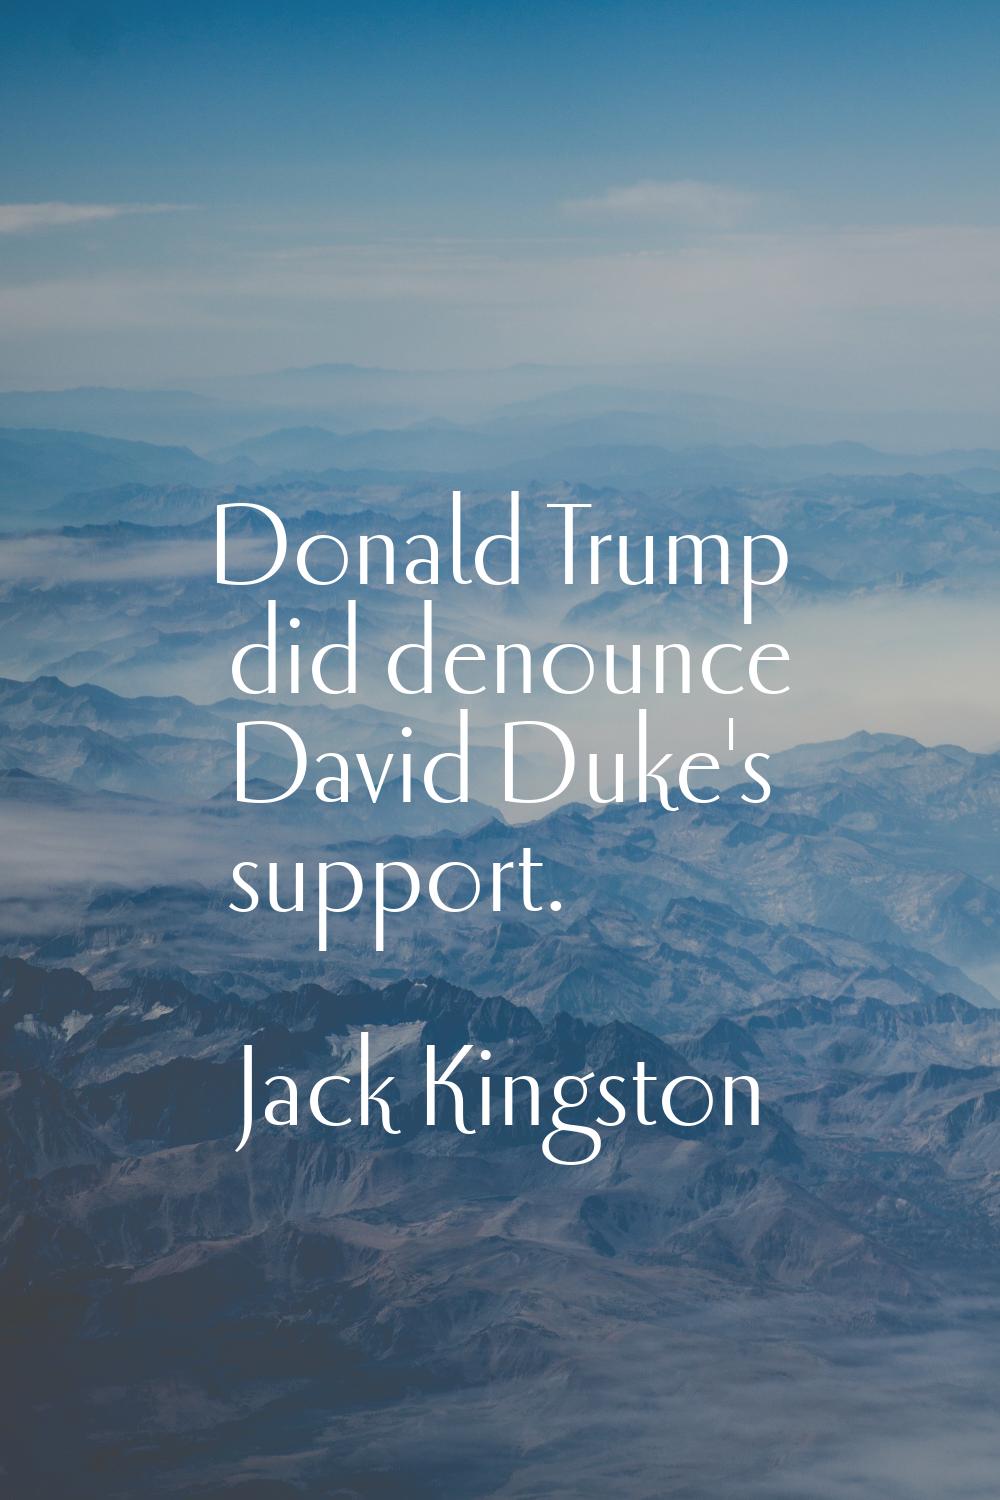 Donald Trump did denounce David Duke's support.